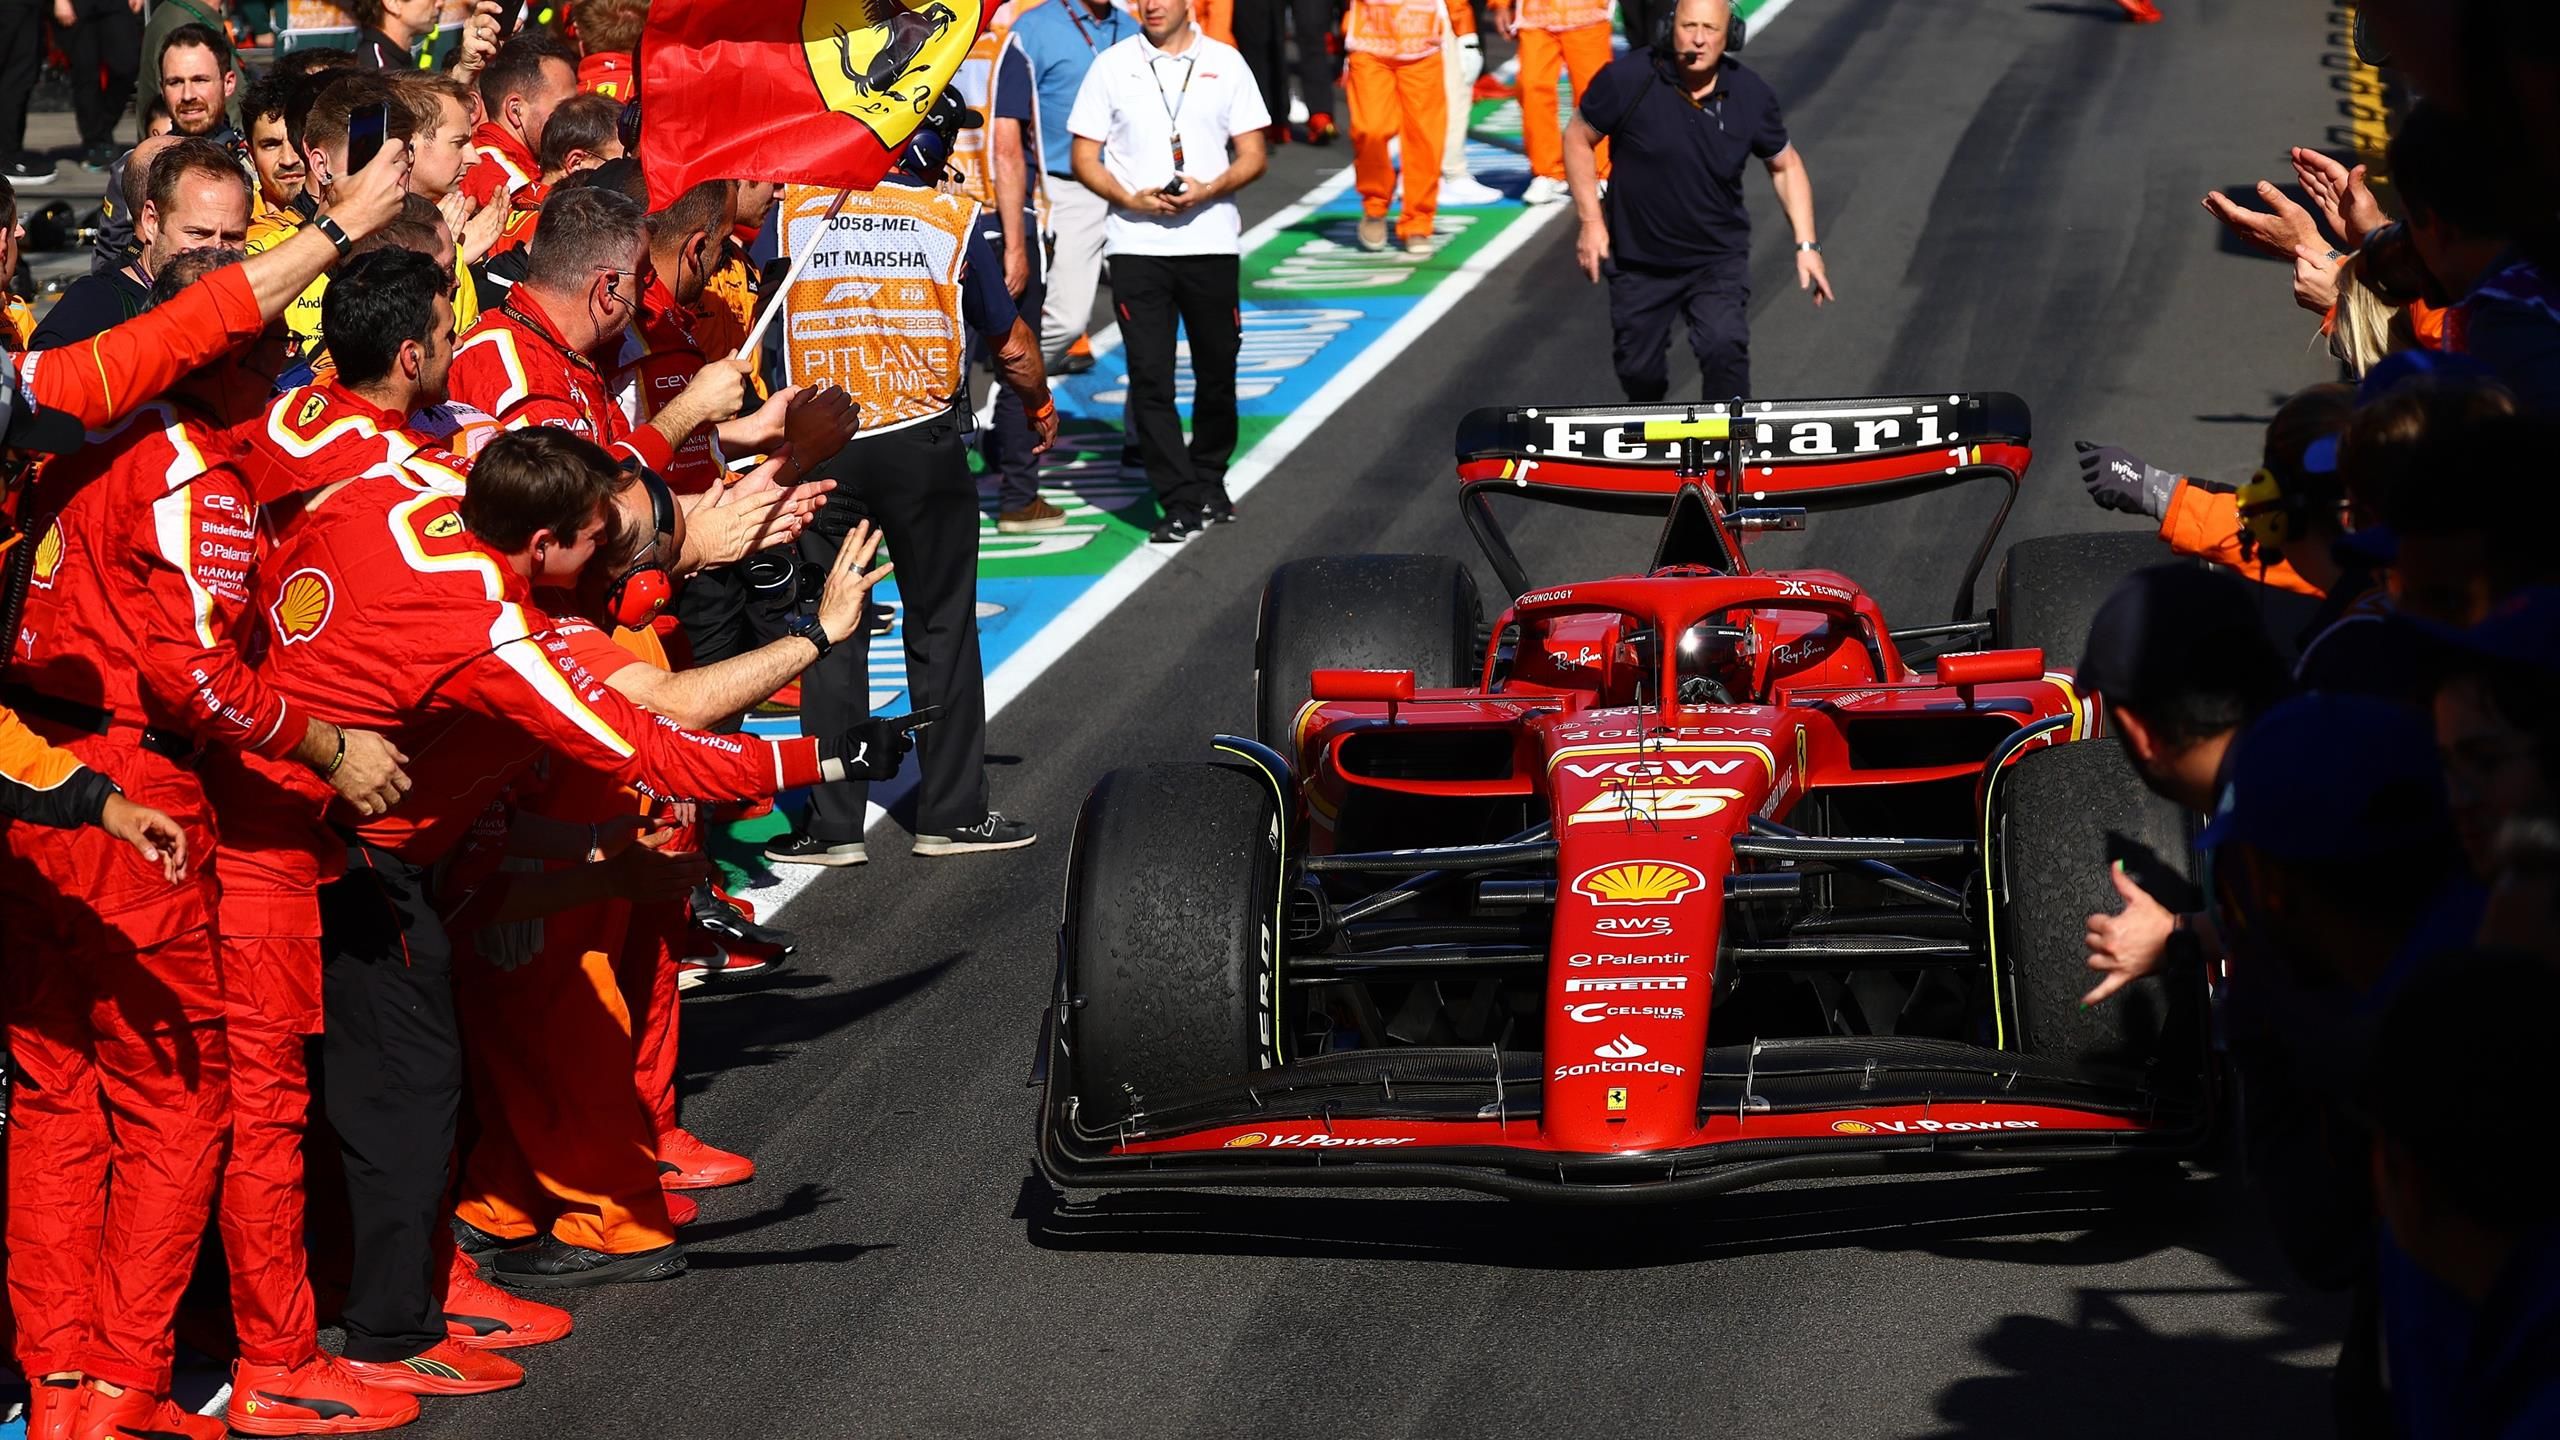 Carlos Sainz, potenziale numero 1 della Ferrari?